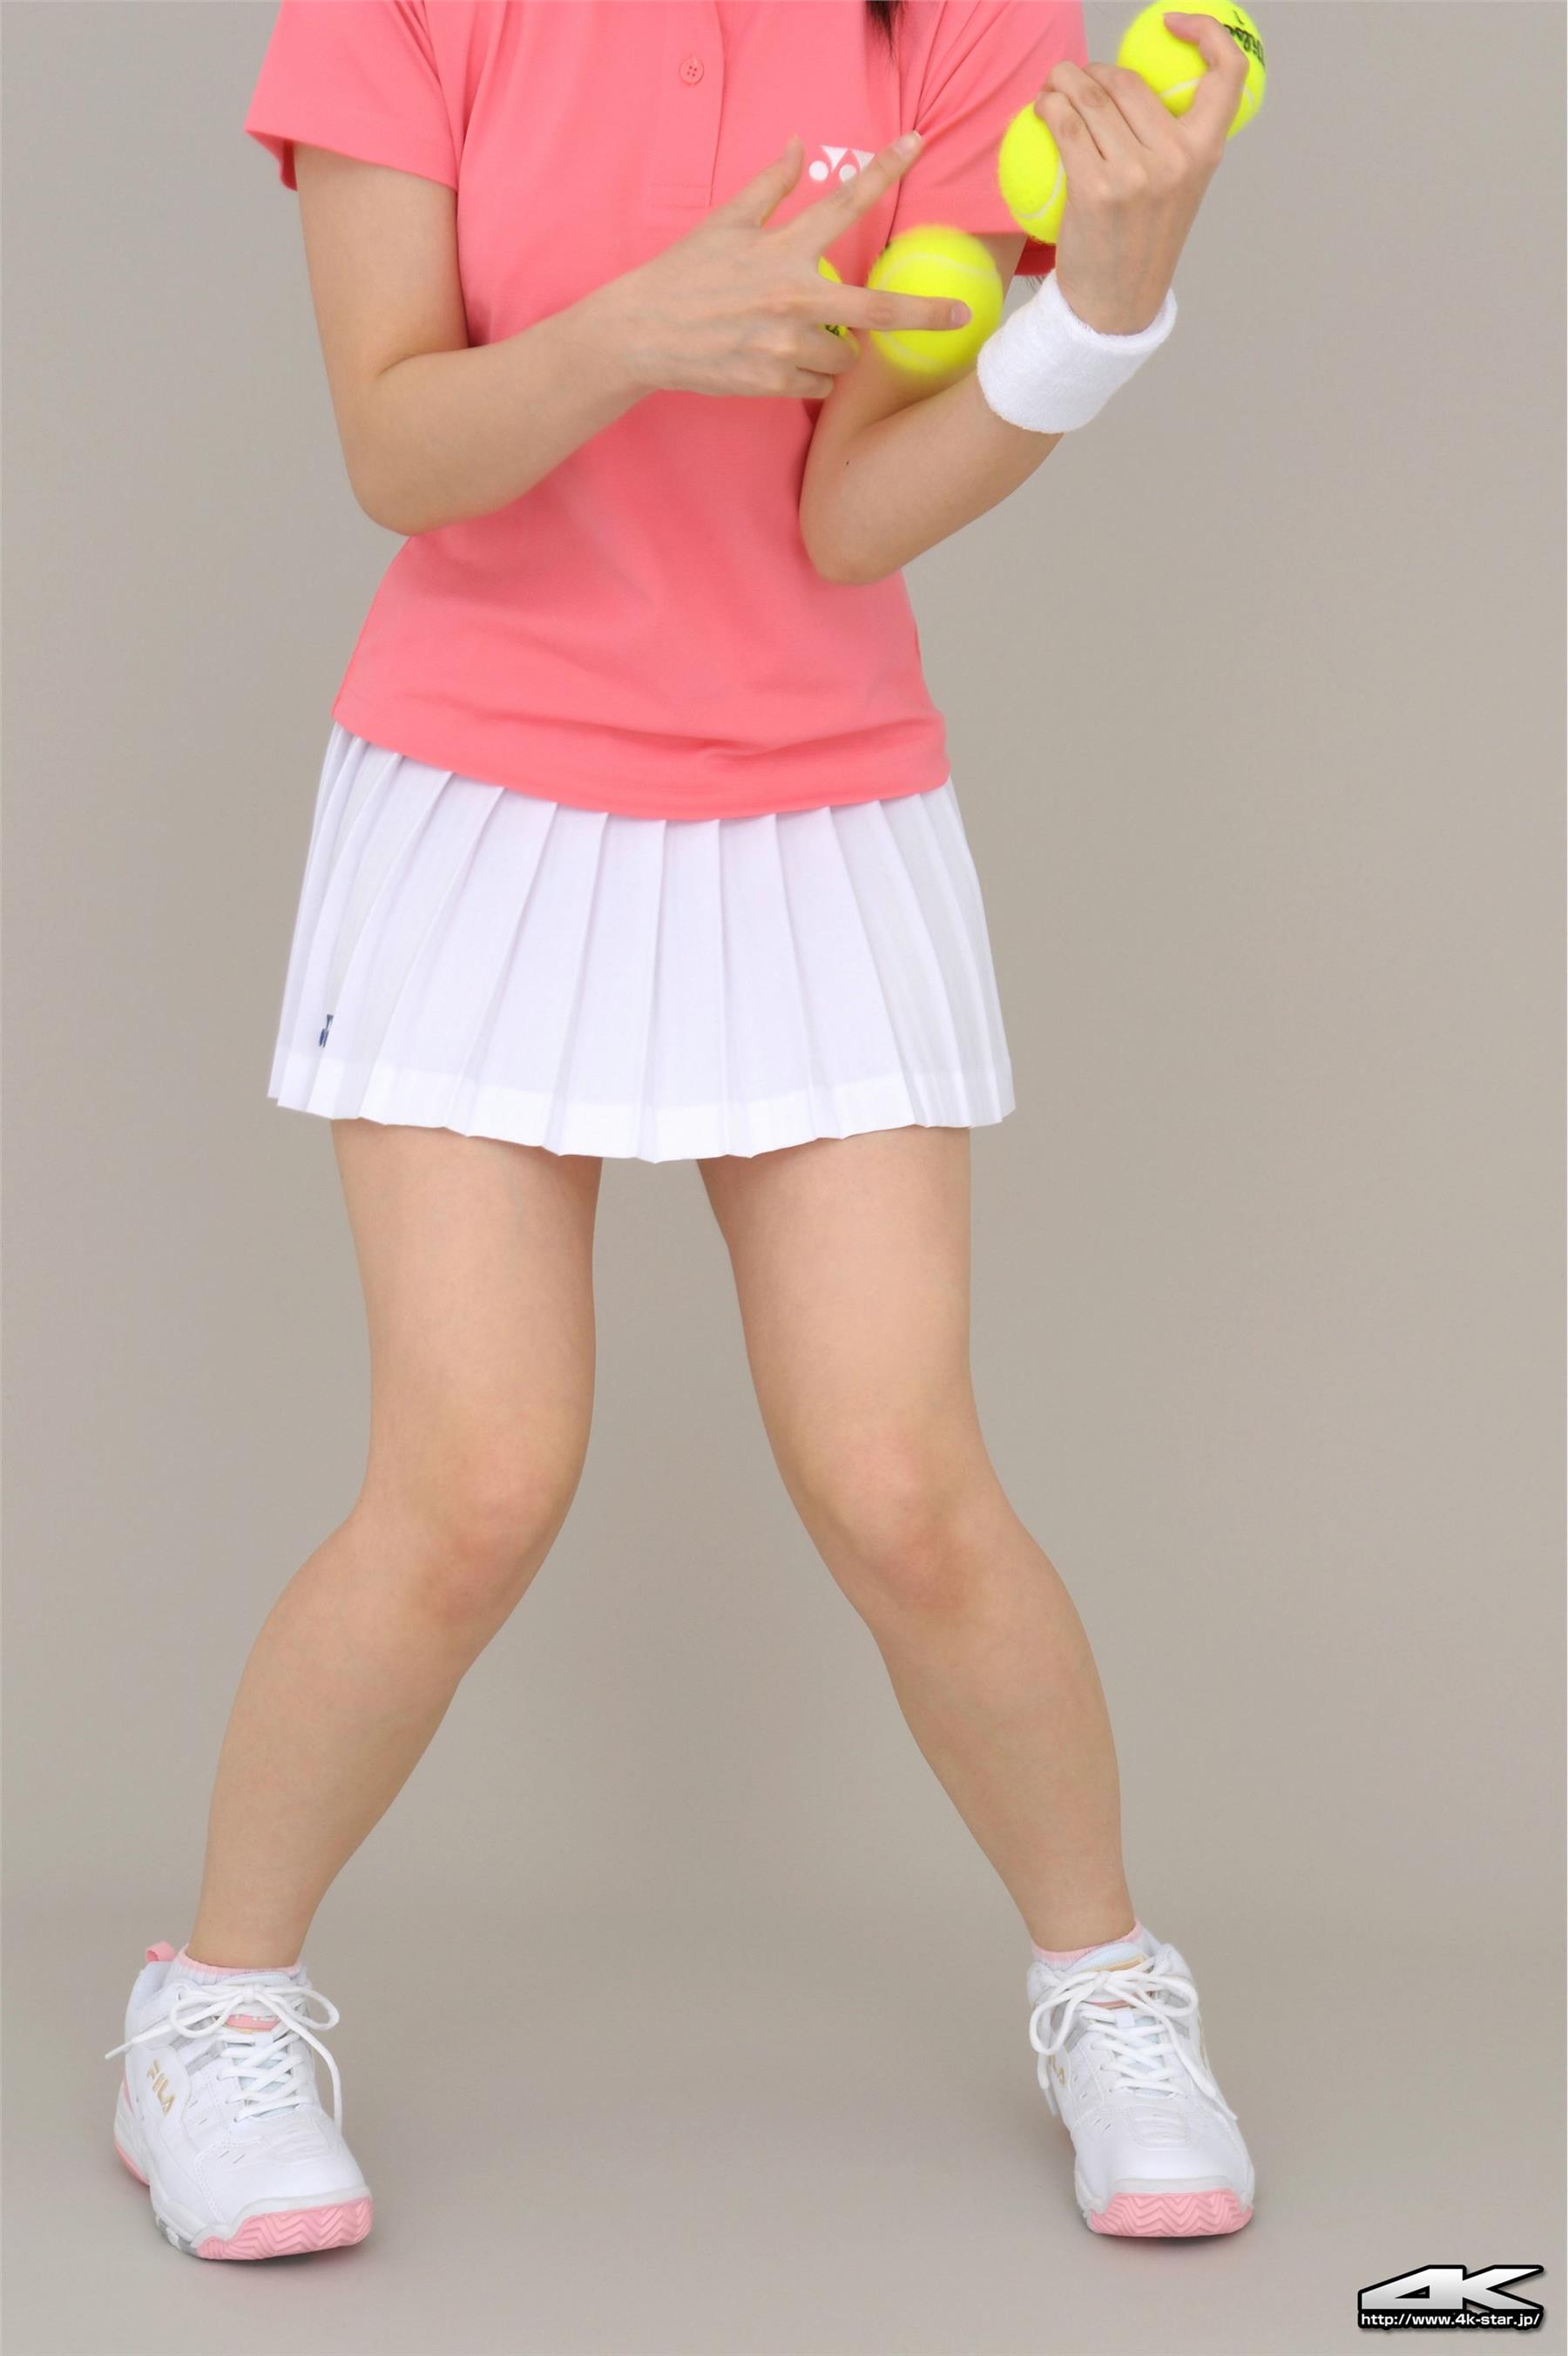 4K-STAR NO.885 Asuka Karuizawa tennis club - 1.jpg